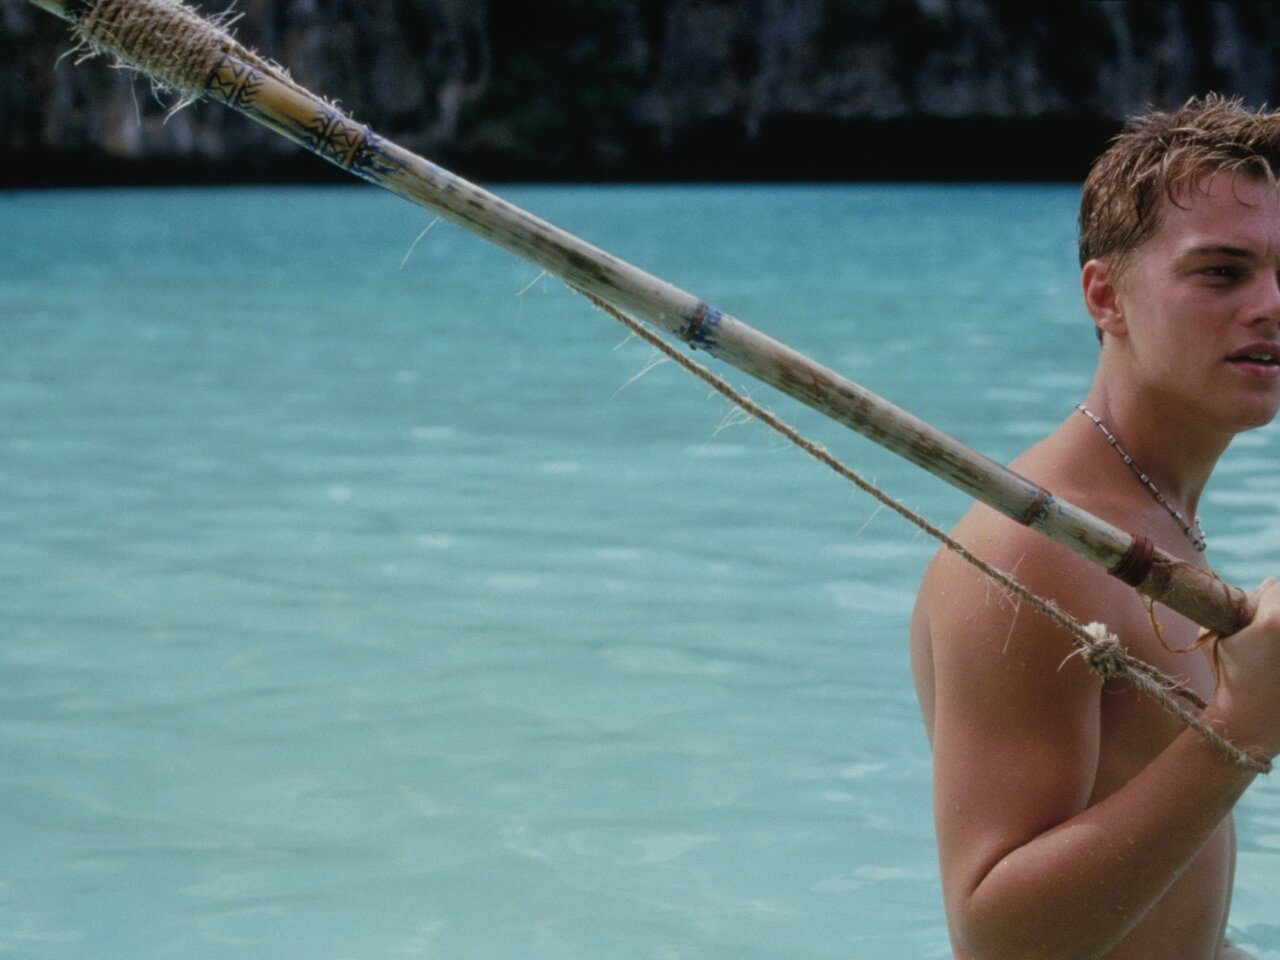 10 filmes que se passam em uma ilha